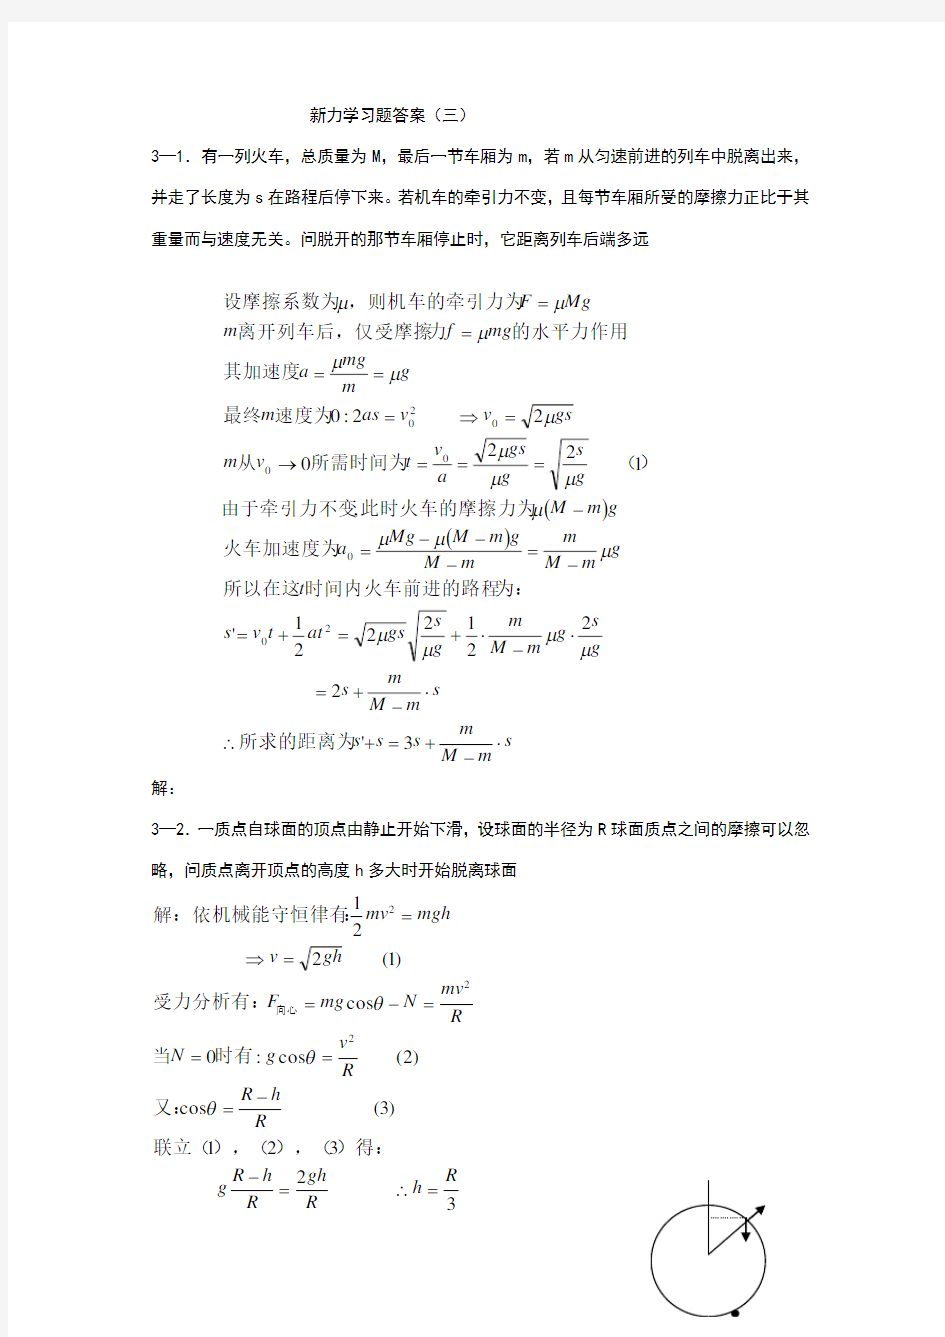 新概念物理教程力学答案详解(三)27